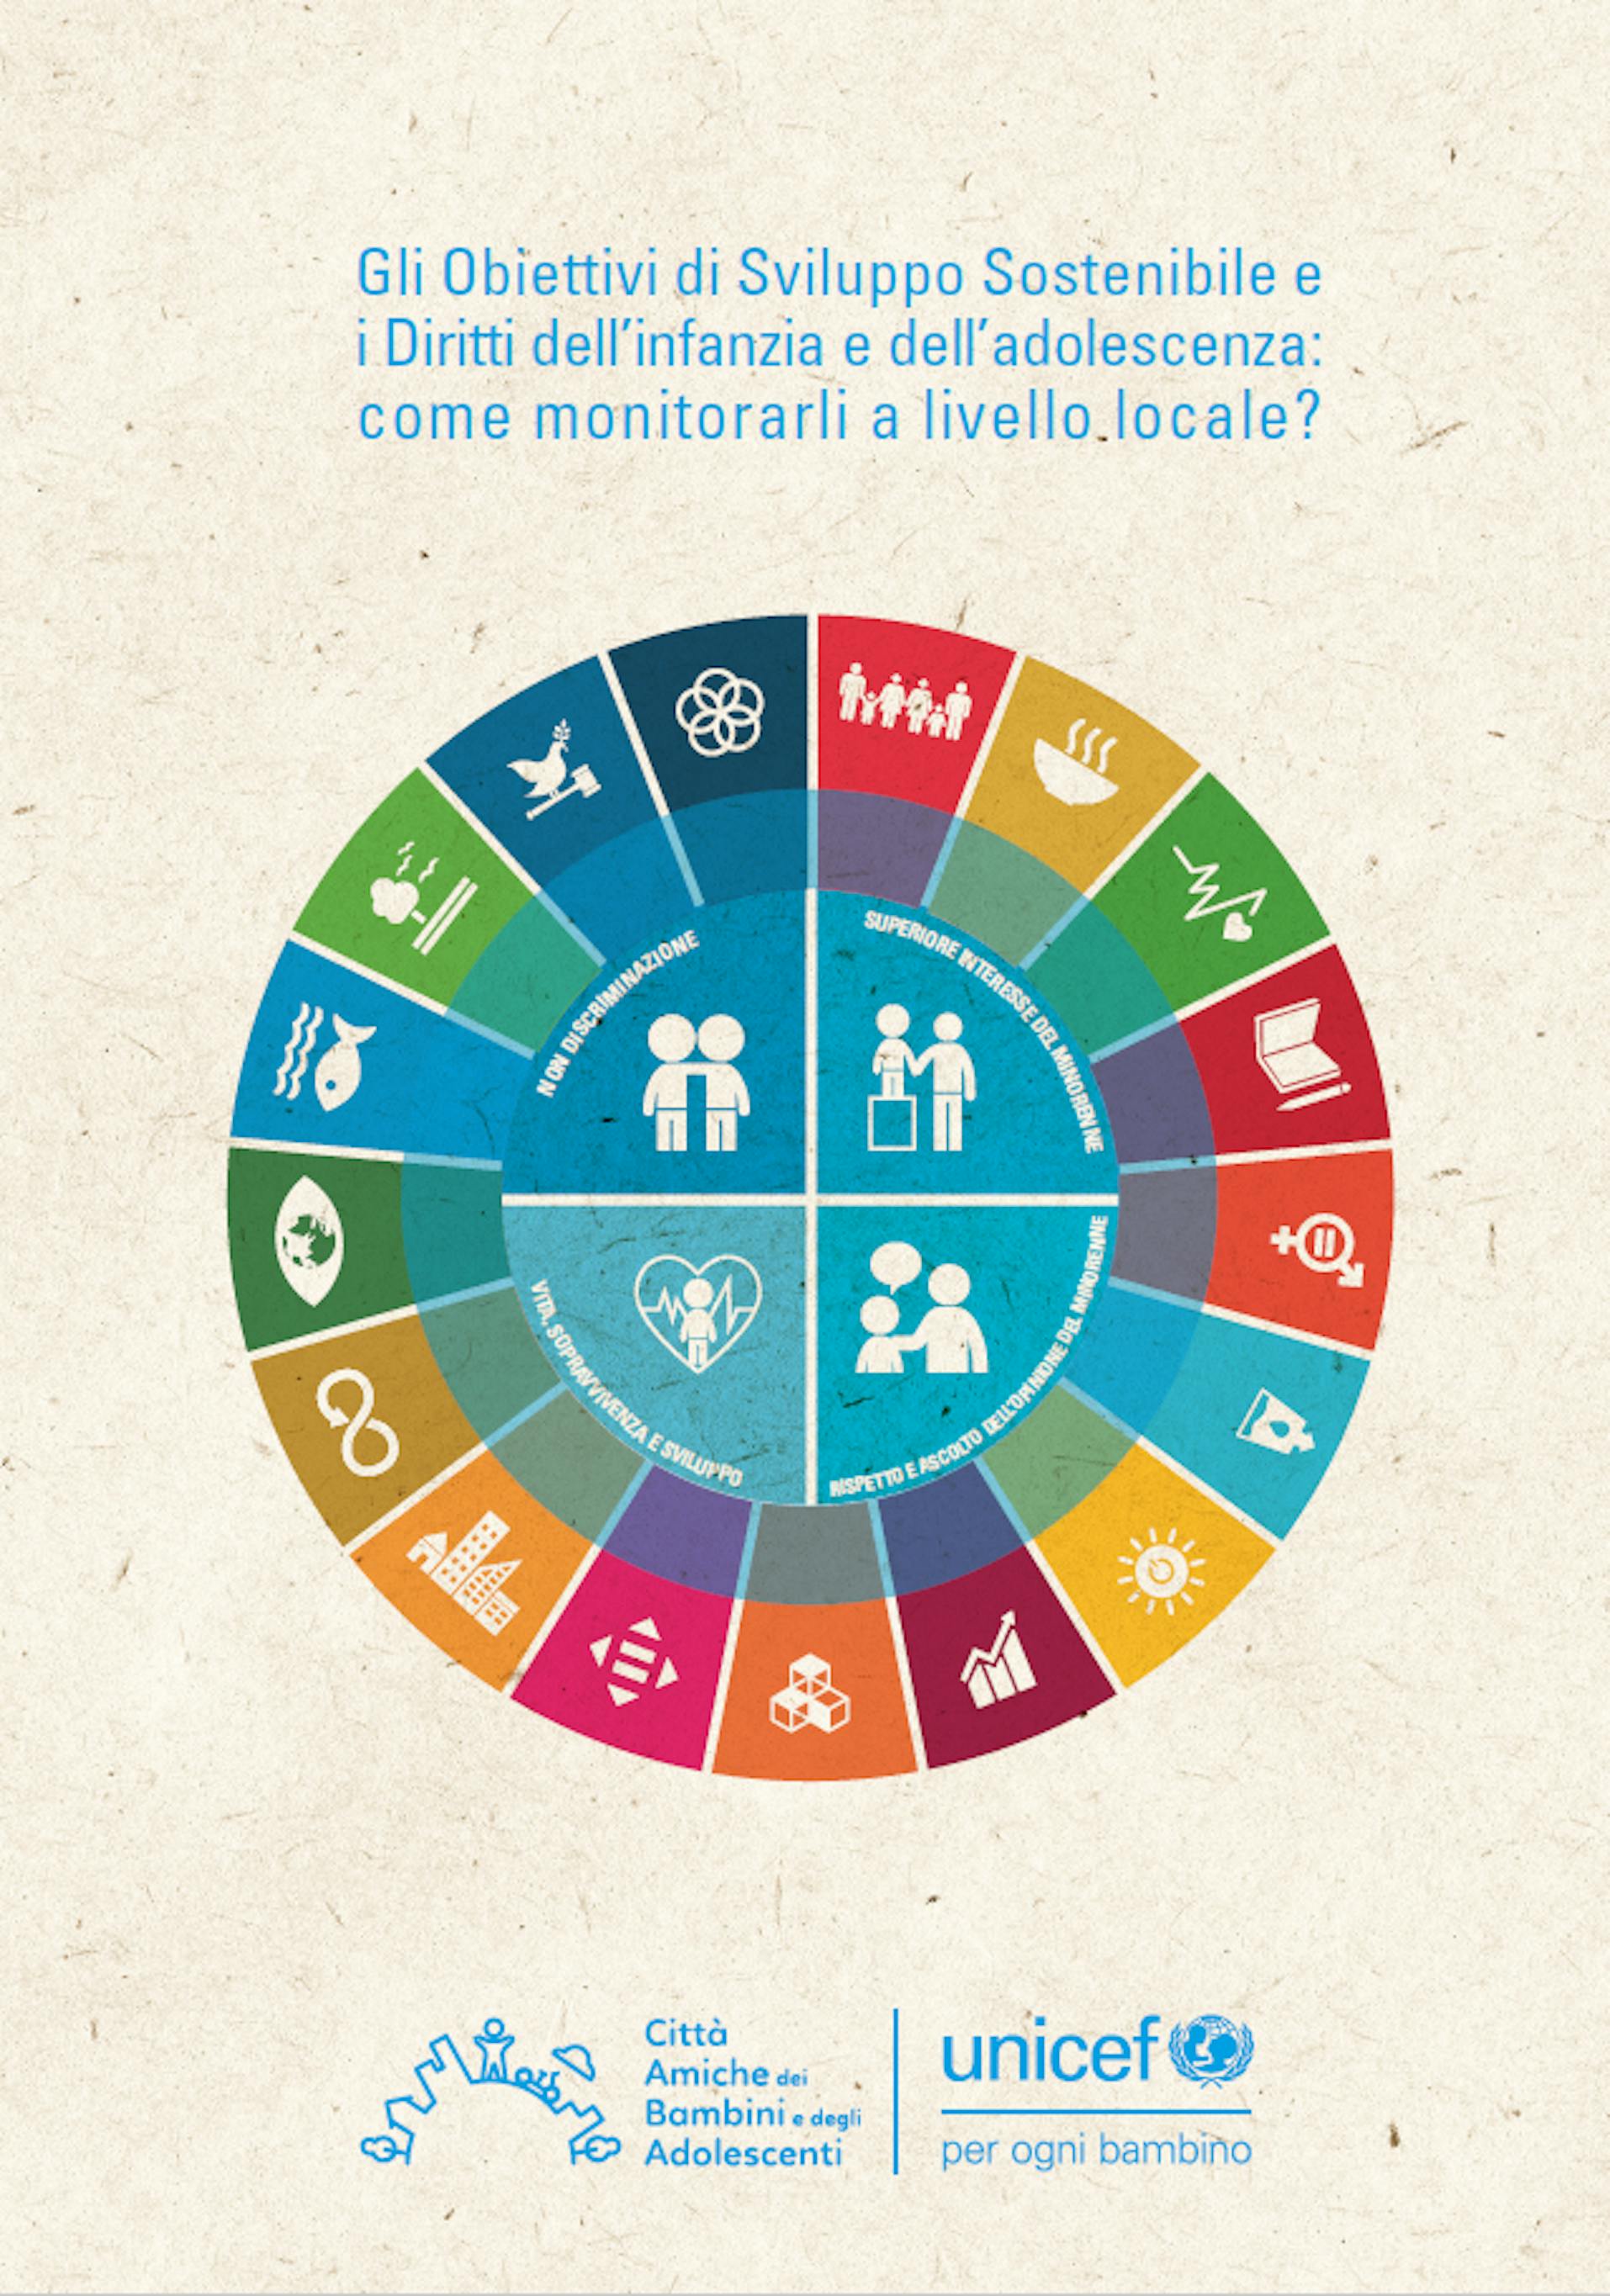 Gli obiettivi di sviluppo sostenibile e i diritti dell'infanzia, come monitorarli a livello locale